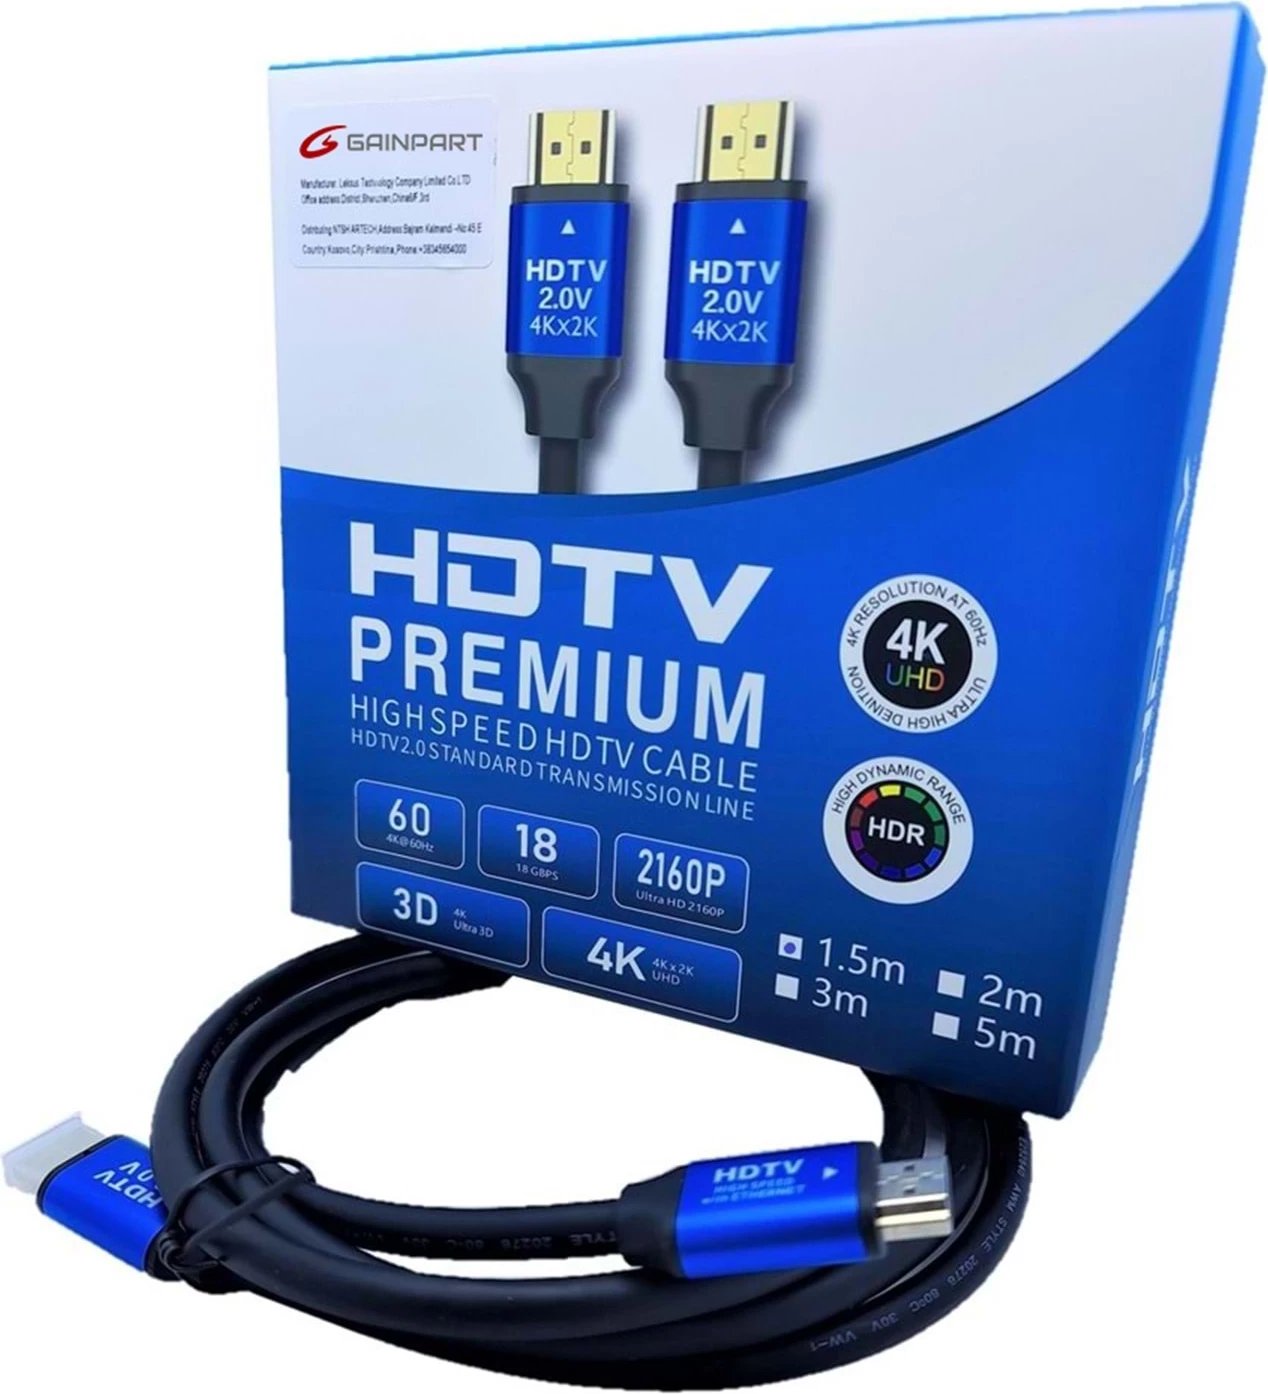  LS-HDC-1.5M - 1.5M HDMI Cable Copper 4K